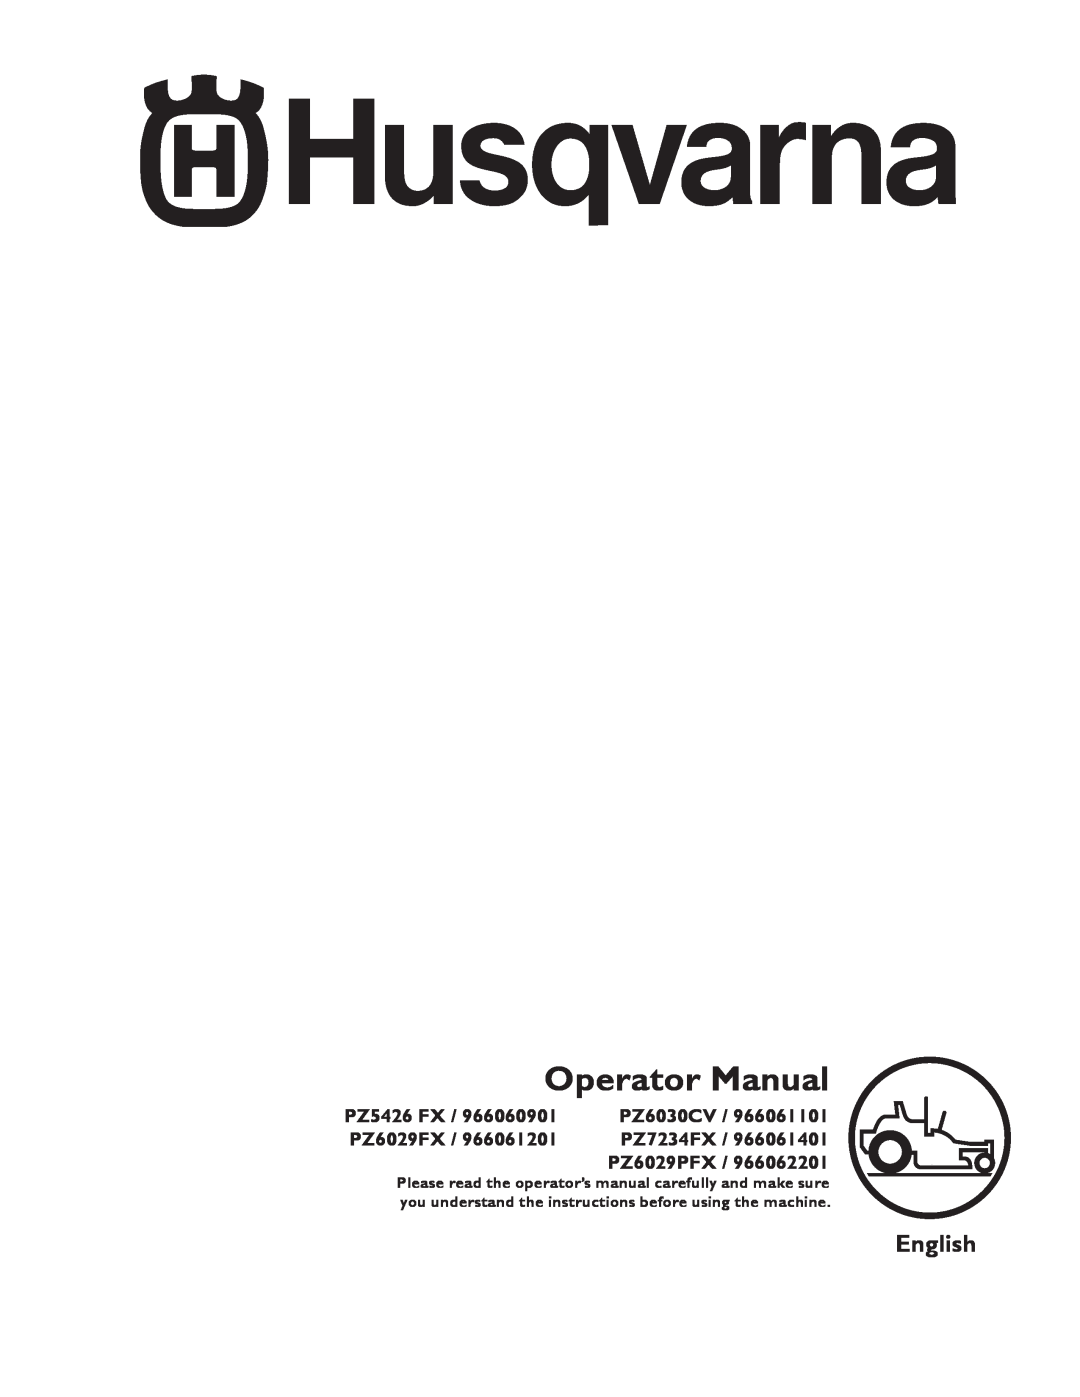 Husqvarna 966061401, 966062201 manual Operator Manual, English, PZ5426 FX, PZ6030CV, PZ6029FX, PZ7234FX, PZ6029PFX 